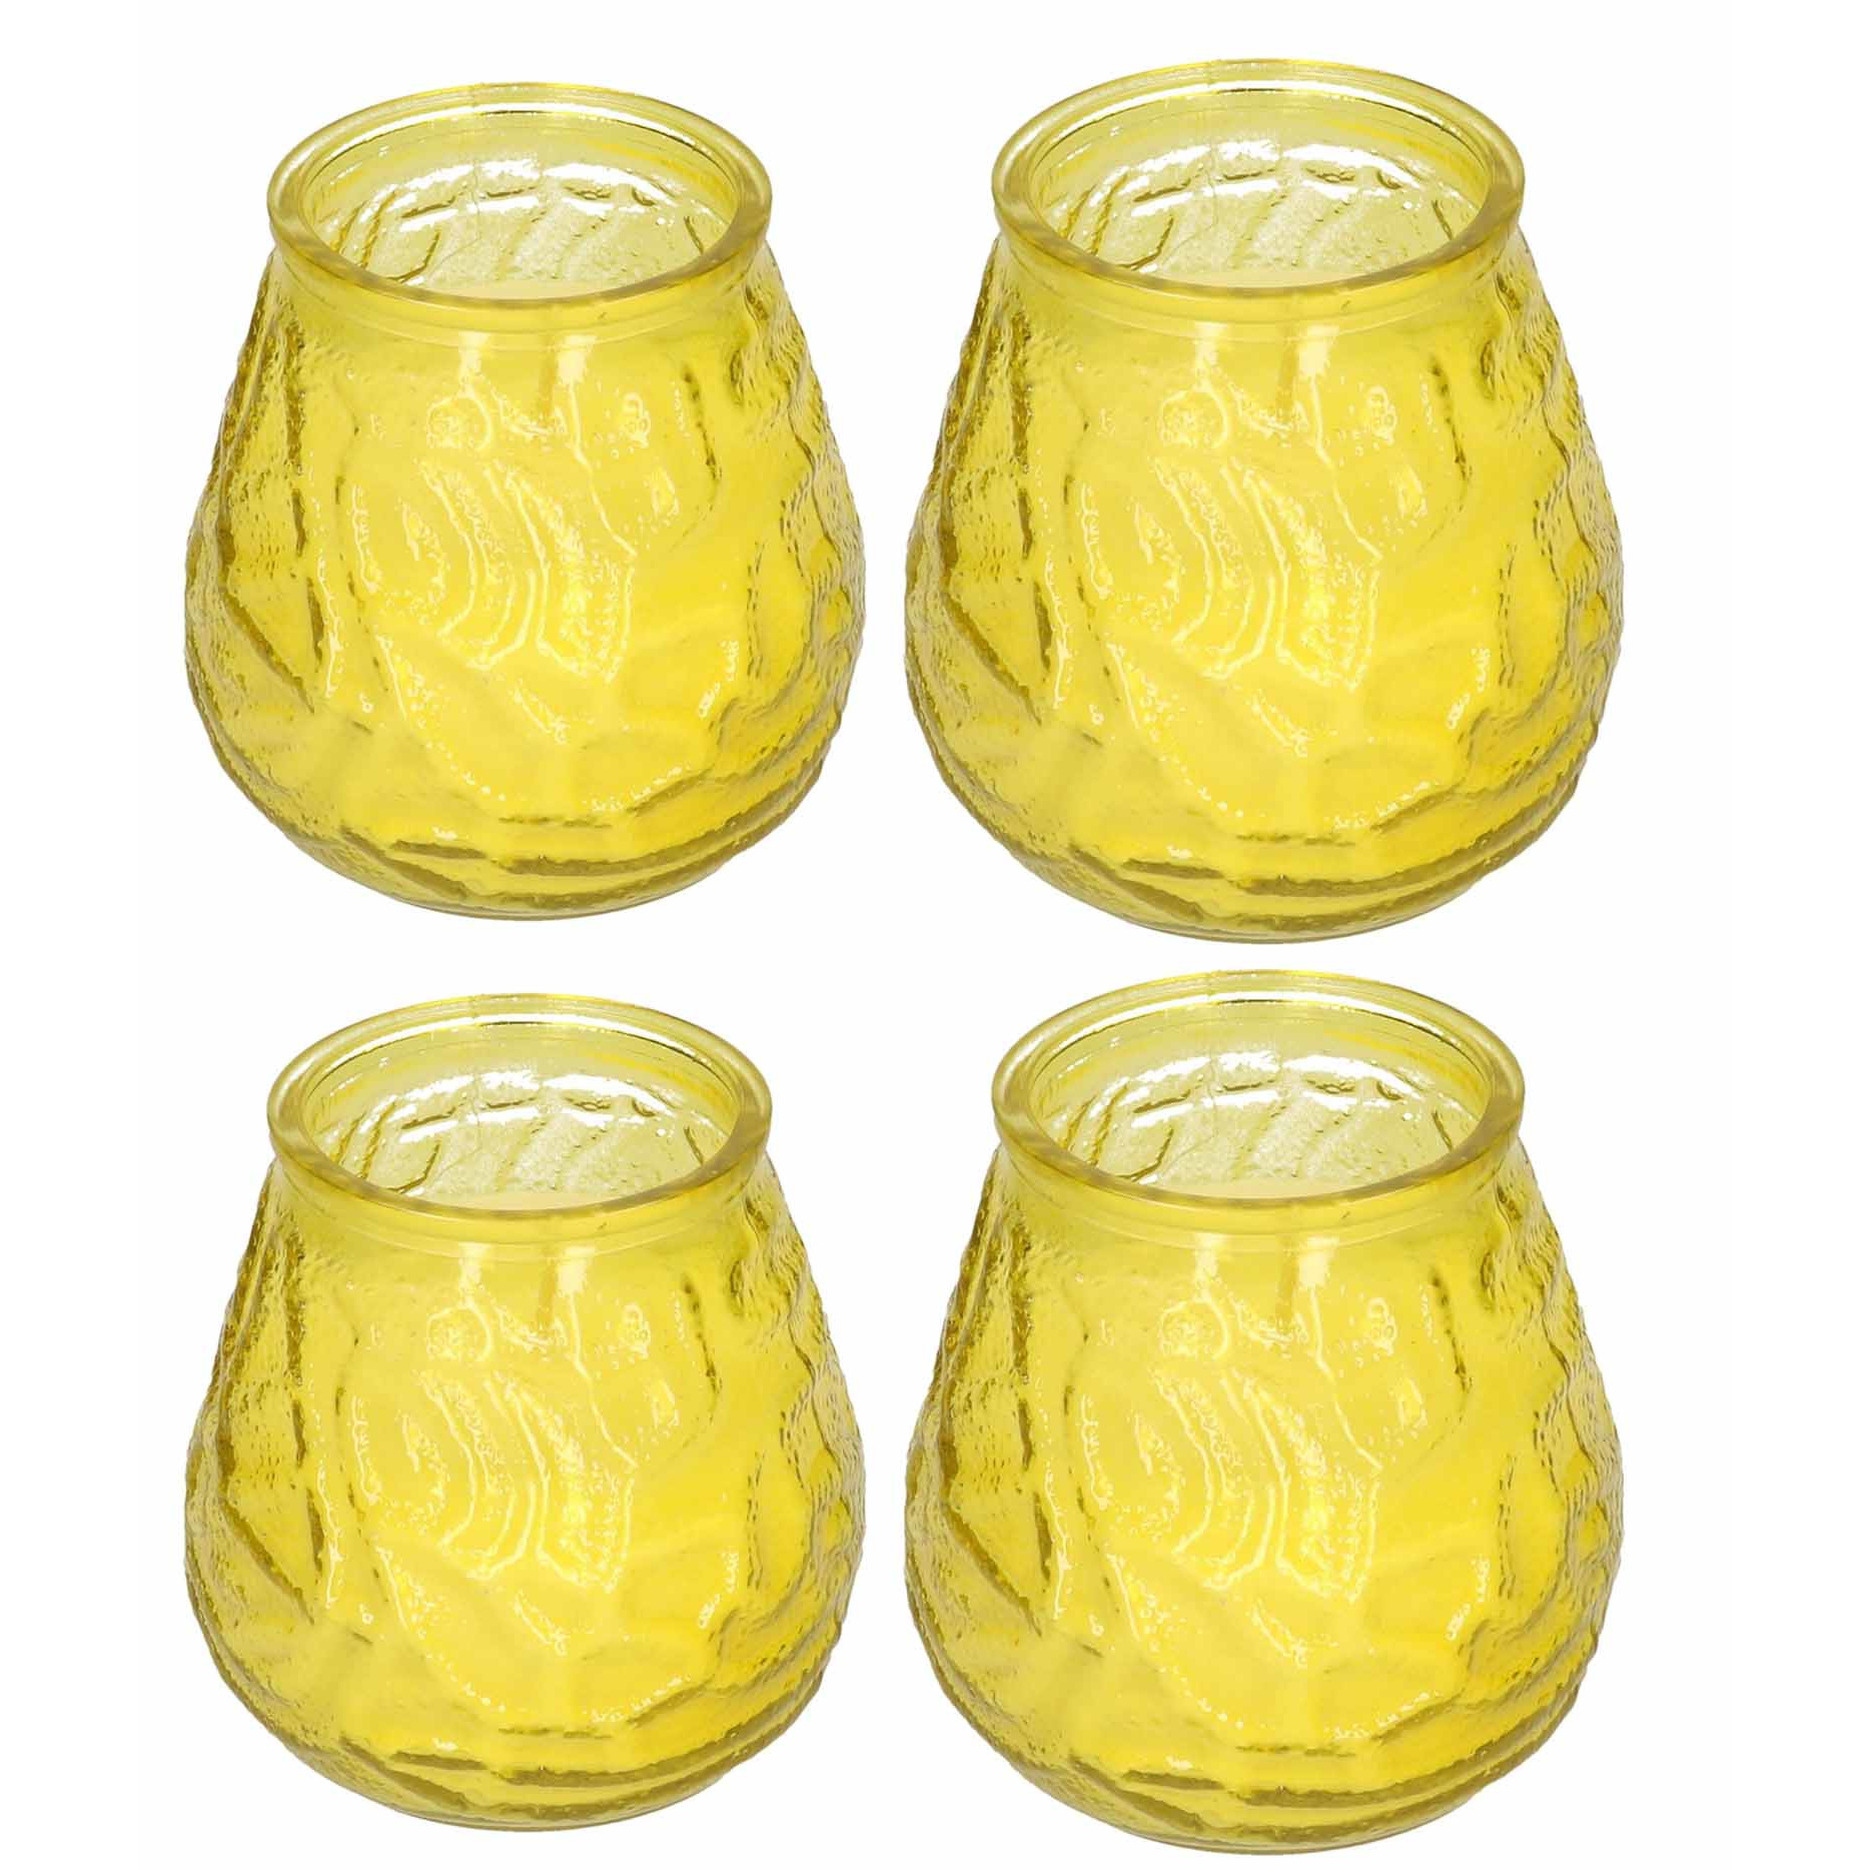 Windlicht geurkaars - 4x - geel glas - 48 branduren - citrusgeur